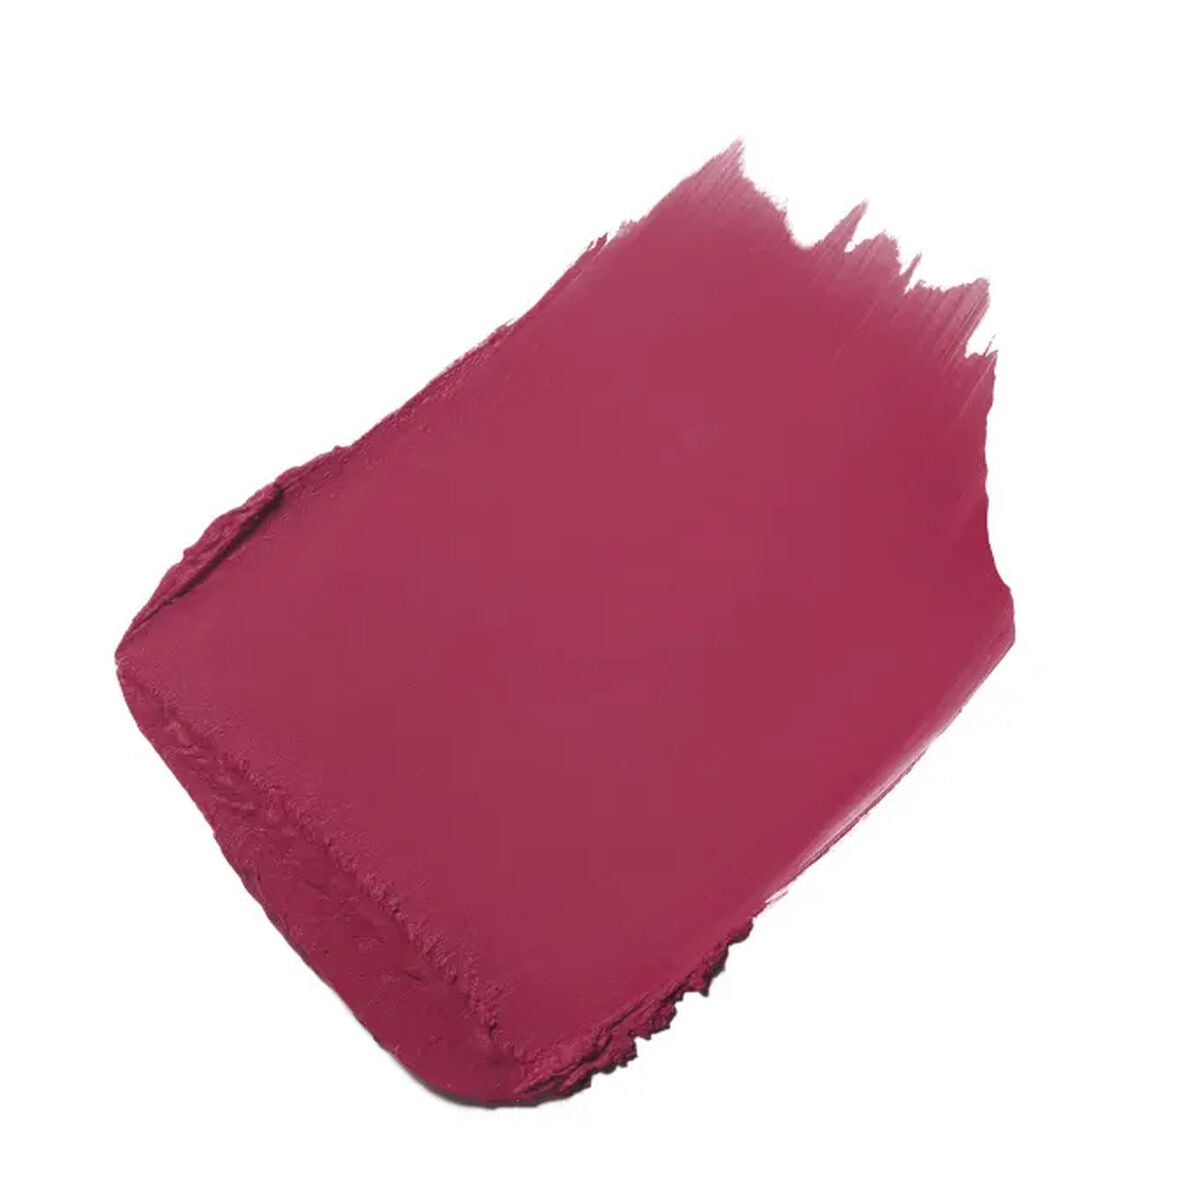 Kaufe Lippenstift Chanel Rouge Allure Velvet Nº 05:00 3,5 g bei AWK Flagship um € 72.00